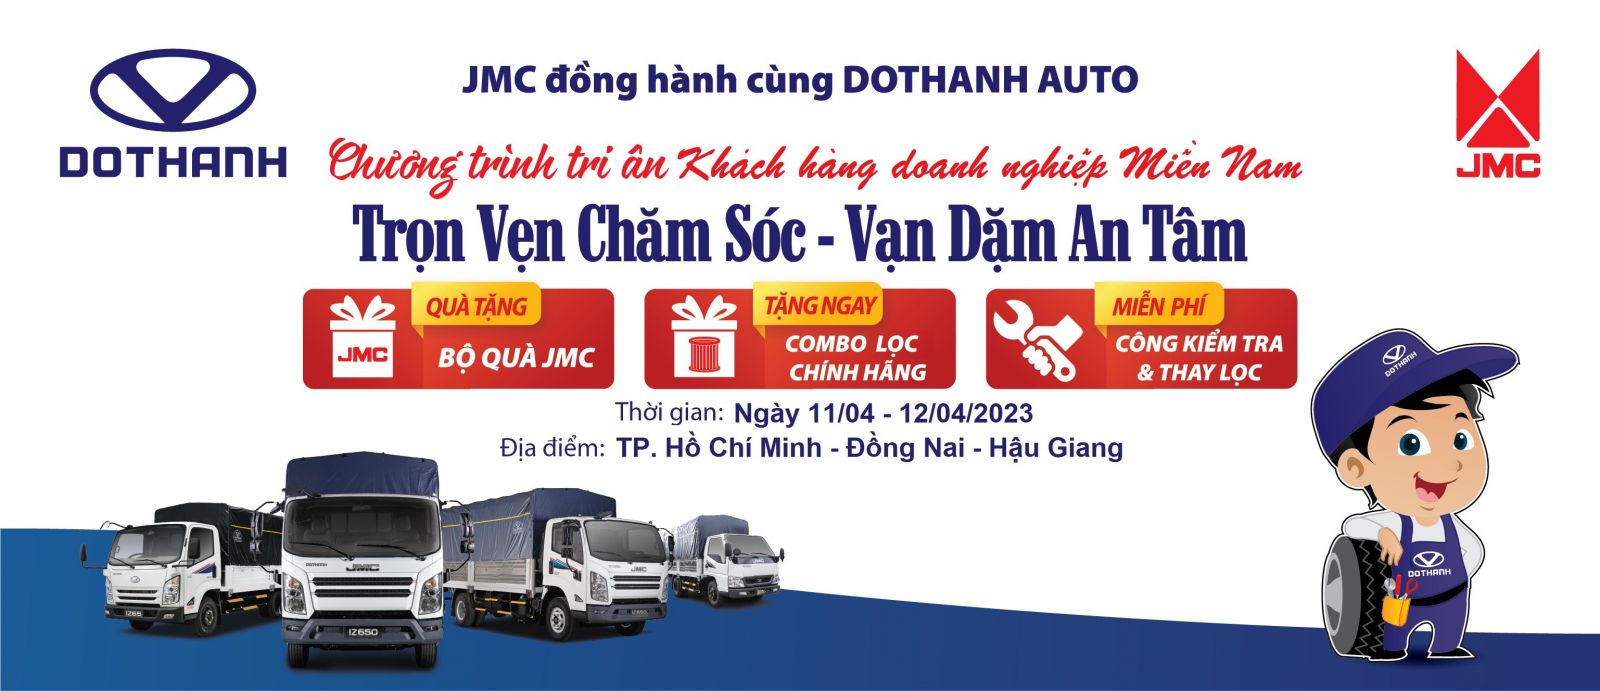 DoThanh Auto đồng hành cùng JMC triển khai chương trình tri ân khách hàng doanh nghiệp tin dùng xe tải DOTHANH IZ tại miền Nam